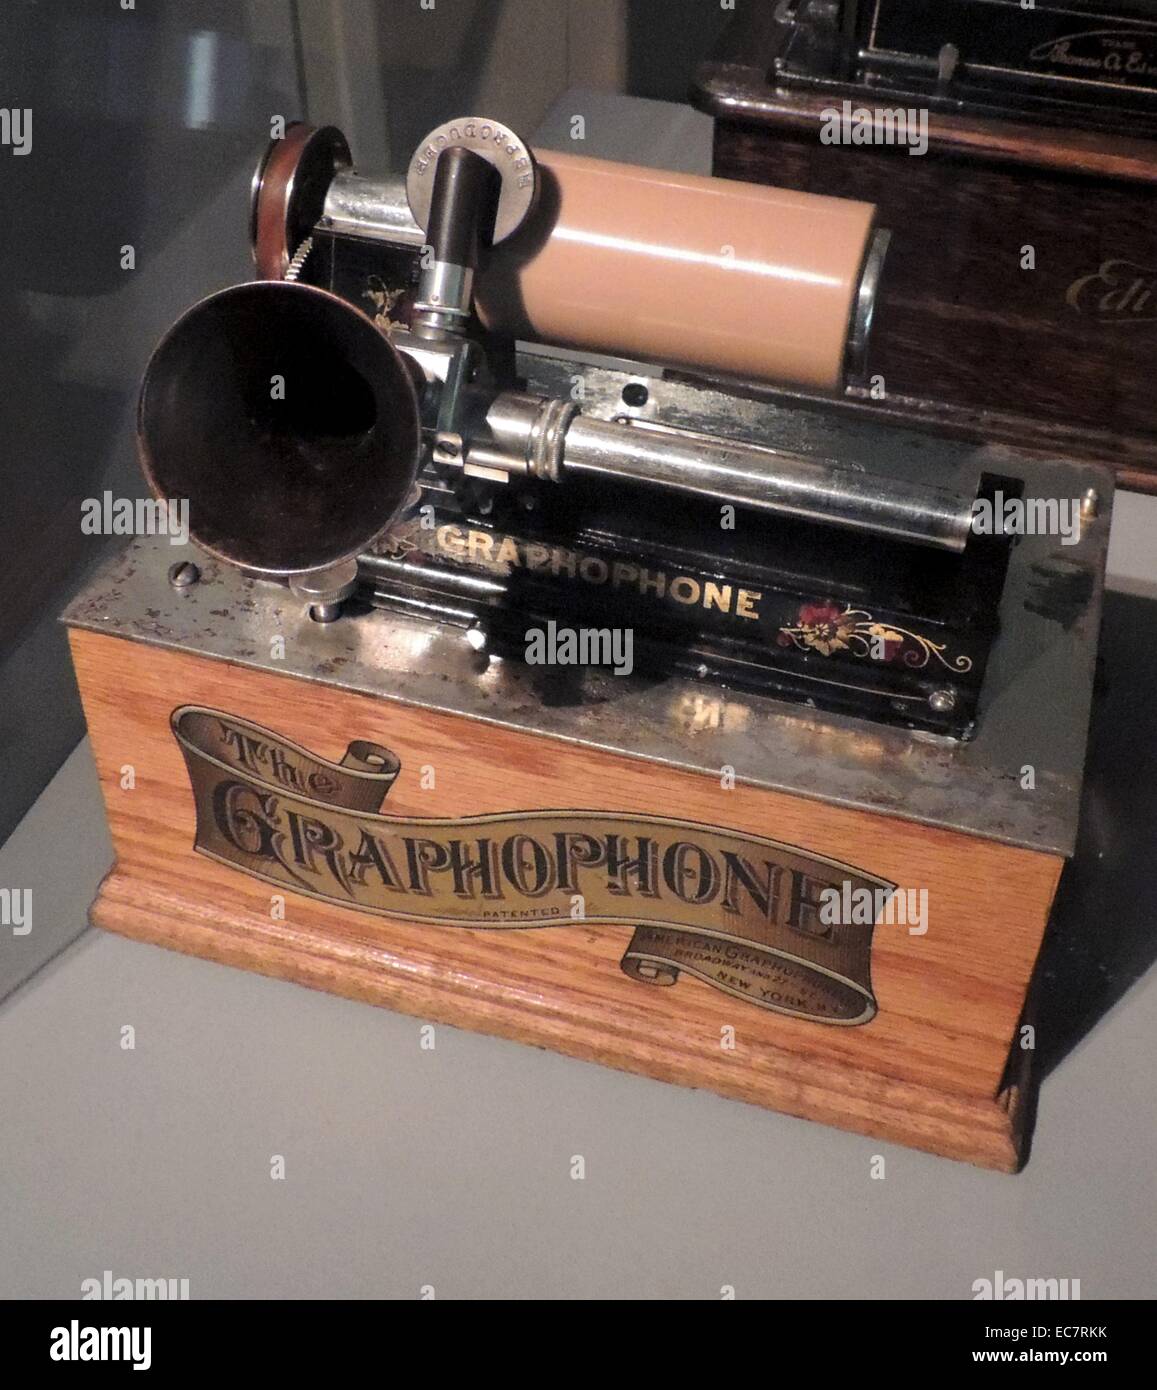 Gramophone für Cinema Sound verwendet. Das grammophon wurde von der Norwegischen Film Pionier und Kino Regisseur Hugo Hermansen besaß. Schallplattenwiedergabegeräte wurden in den frühesten Kinos verwendet Stummfilm zu begleiten. Emile Berliner, ein deutscher Einwanderer in den USA konkurriert mit Edison auf mehrere Erfindungen. Er verwendete flache Scheiben anstelle von Zylindern, die einen Vorteil in der Massenfertigung von Aufnahmen war. Stockfoto